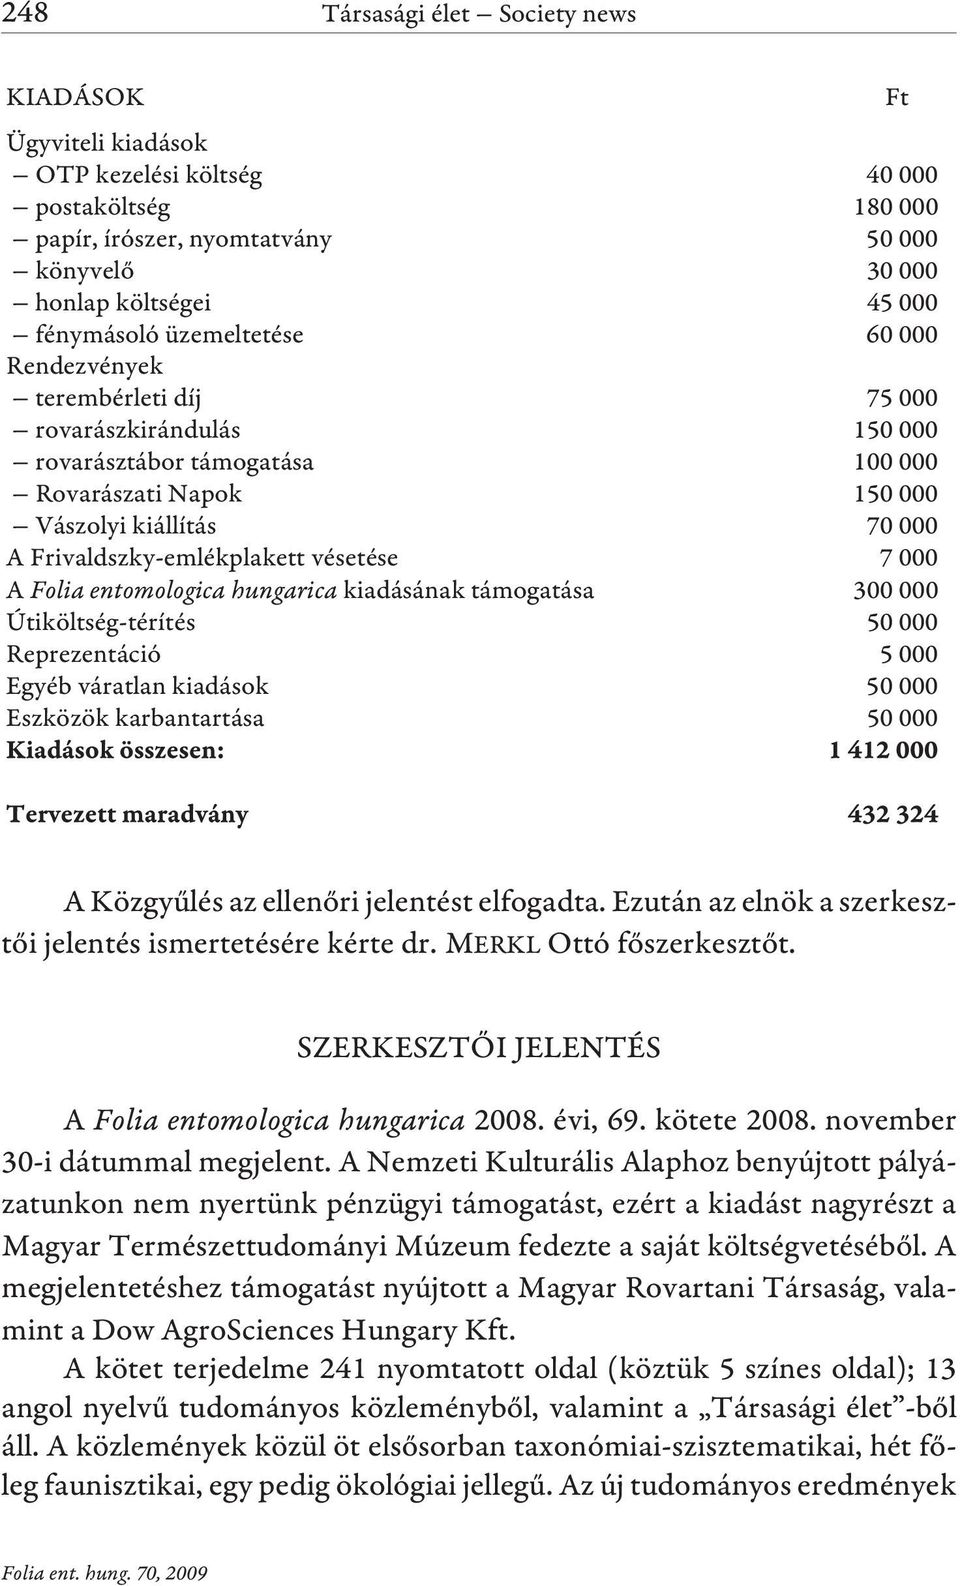 vésetése 7 000 A Folia entomologica hungarica kiadásának támogatása 300 000 Útiköltség-térítés 50 000 Reprezentáció 5 000 Egyéb váratlan kiadások 50 000 Eszközök karbantartása 50 000 A Közgyûlés az